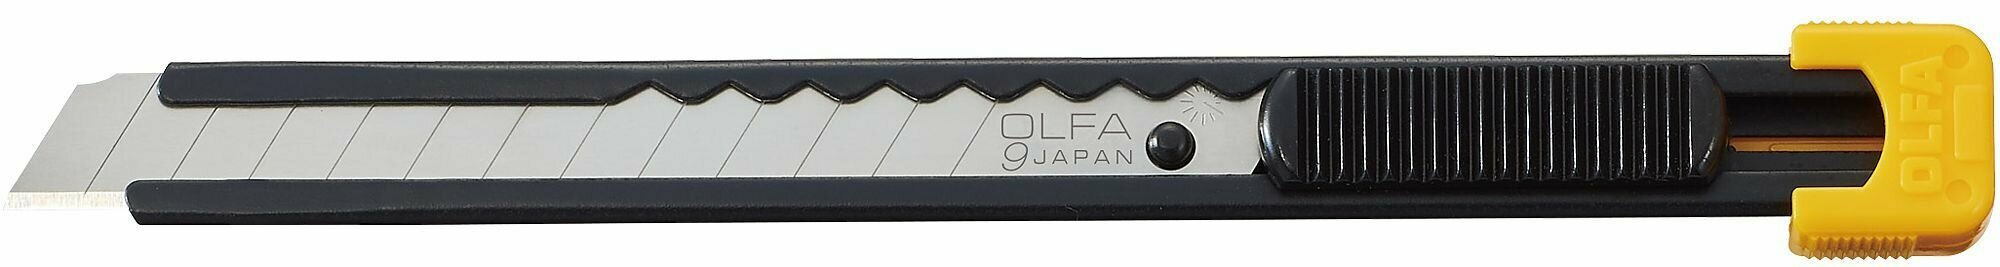 Нож с выдвижным лезвием, металлический корпус, 9 мм OLFA